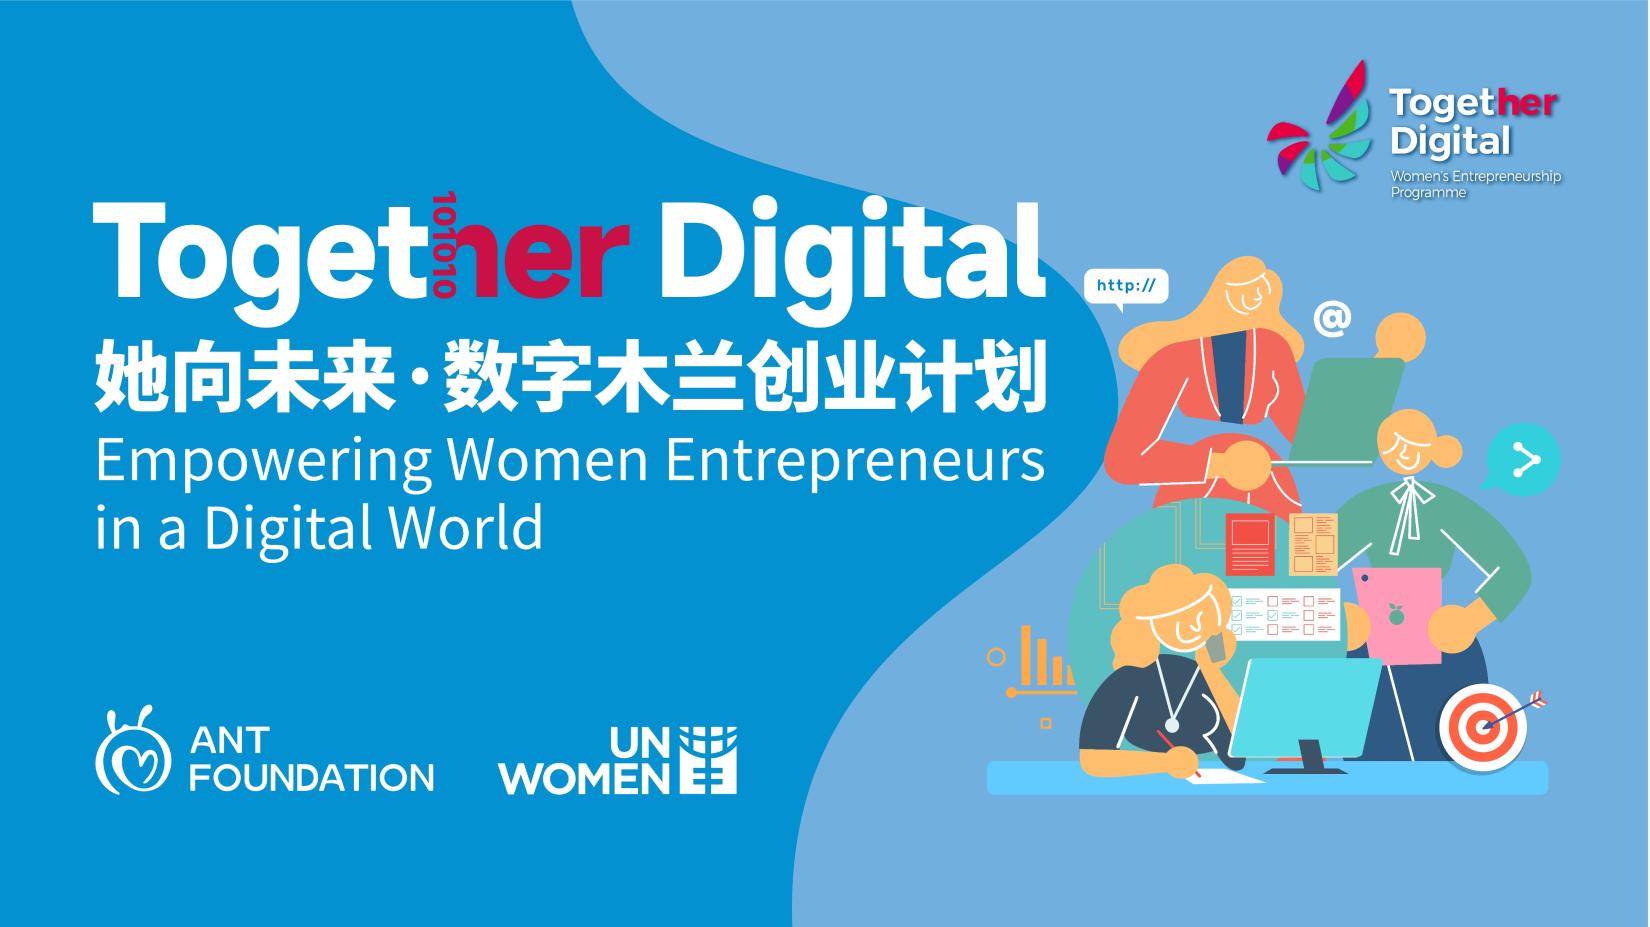 “她向未来·数字木兰创业计划” 支持中小微企业的女性创业者在数字经济中获得更好发展